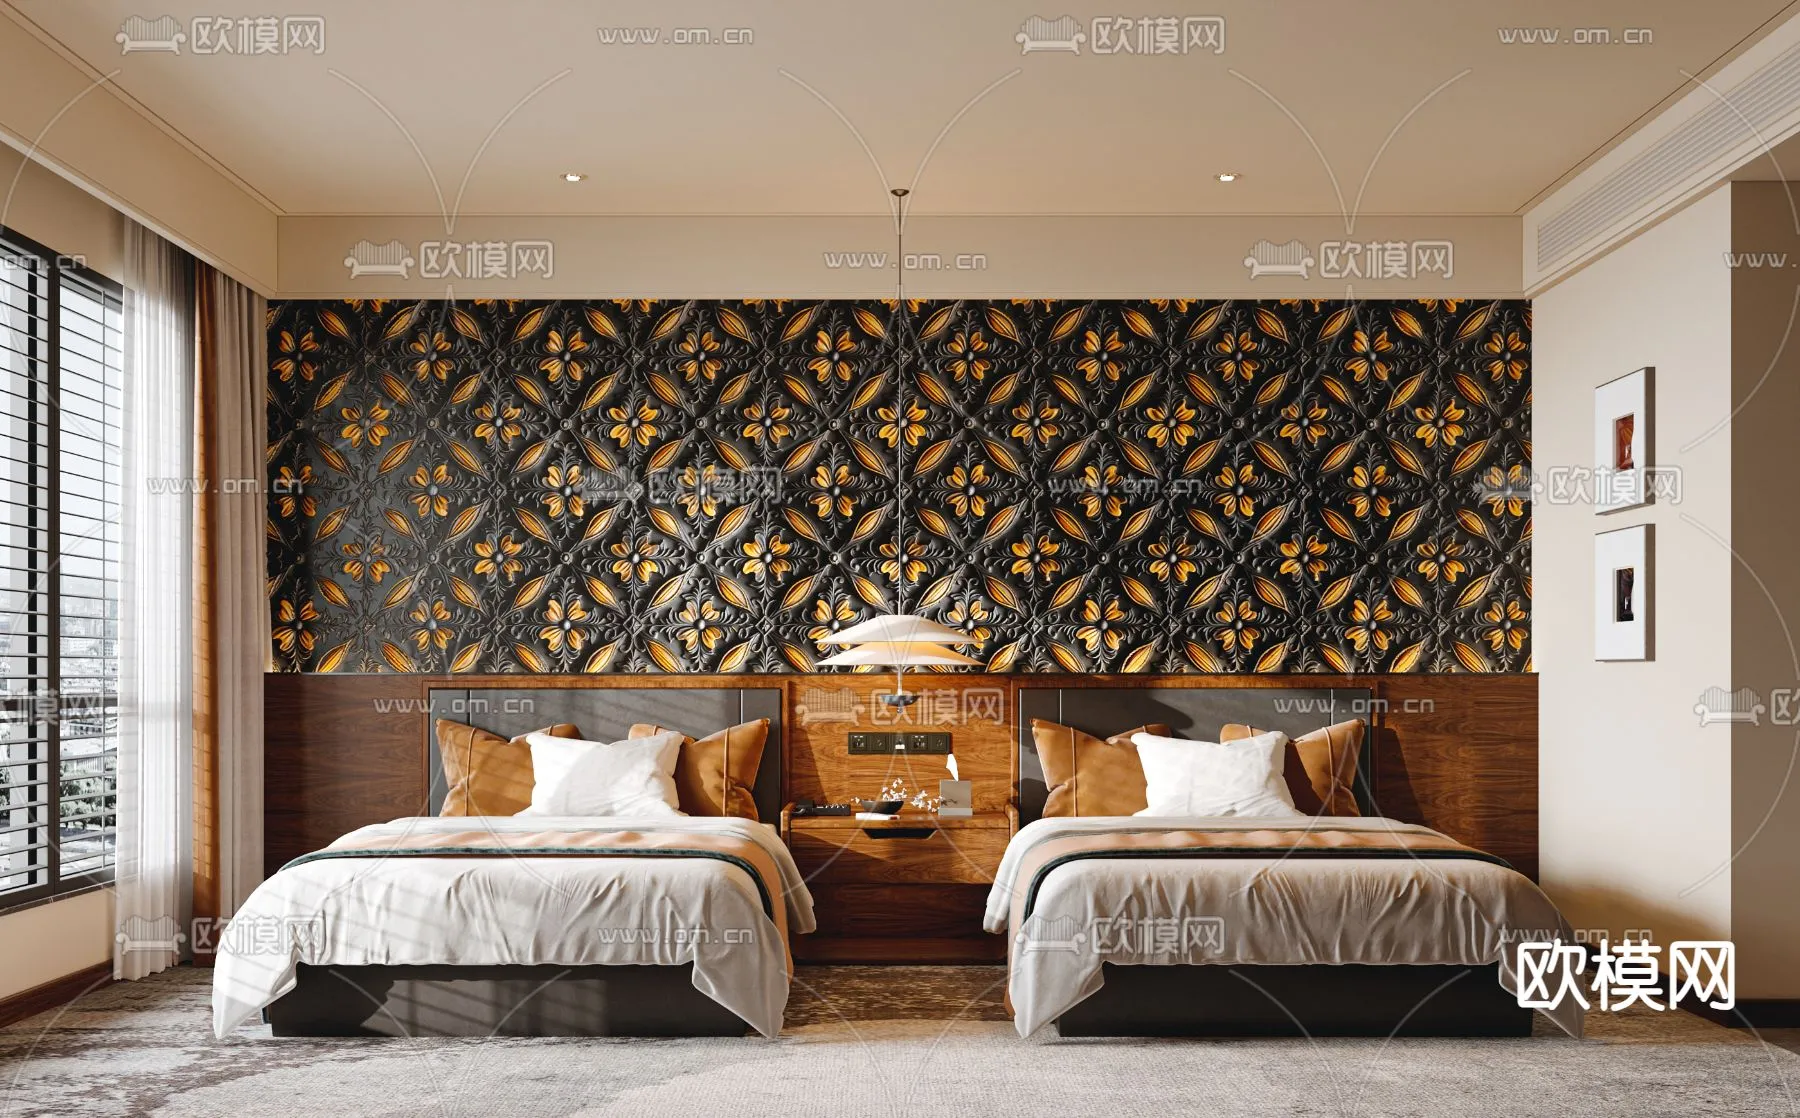 Hotel Room – Bedroom For Hotel 3D Models – 007